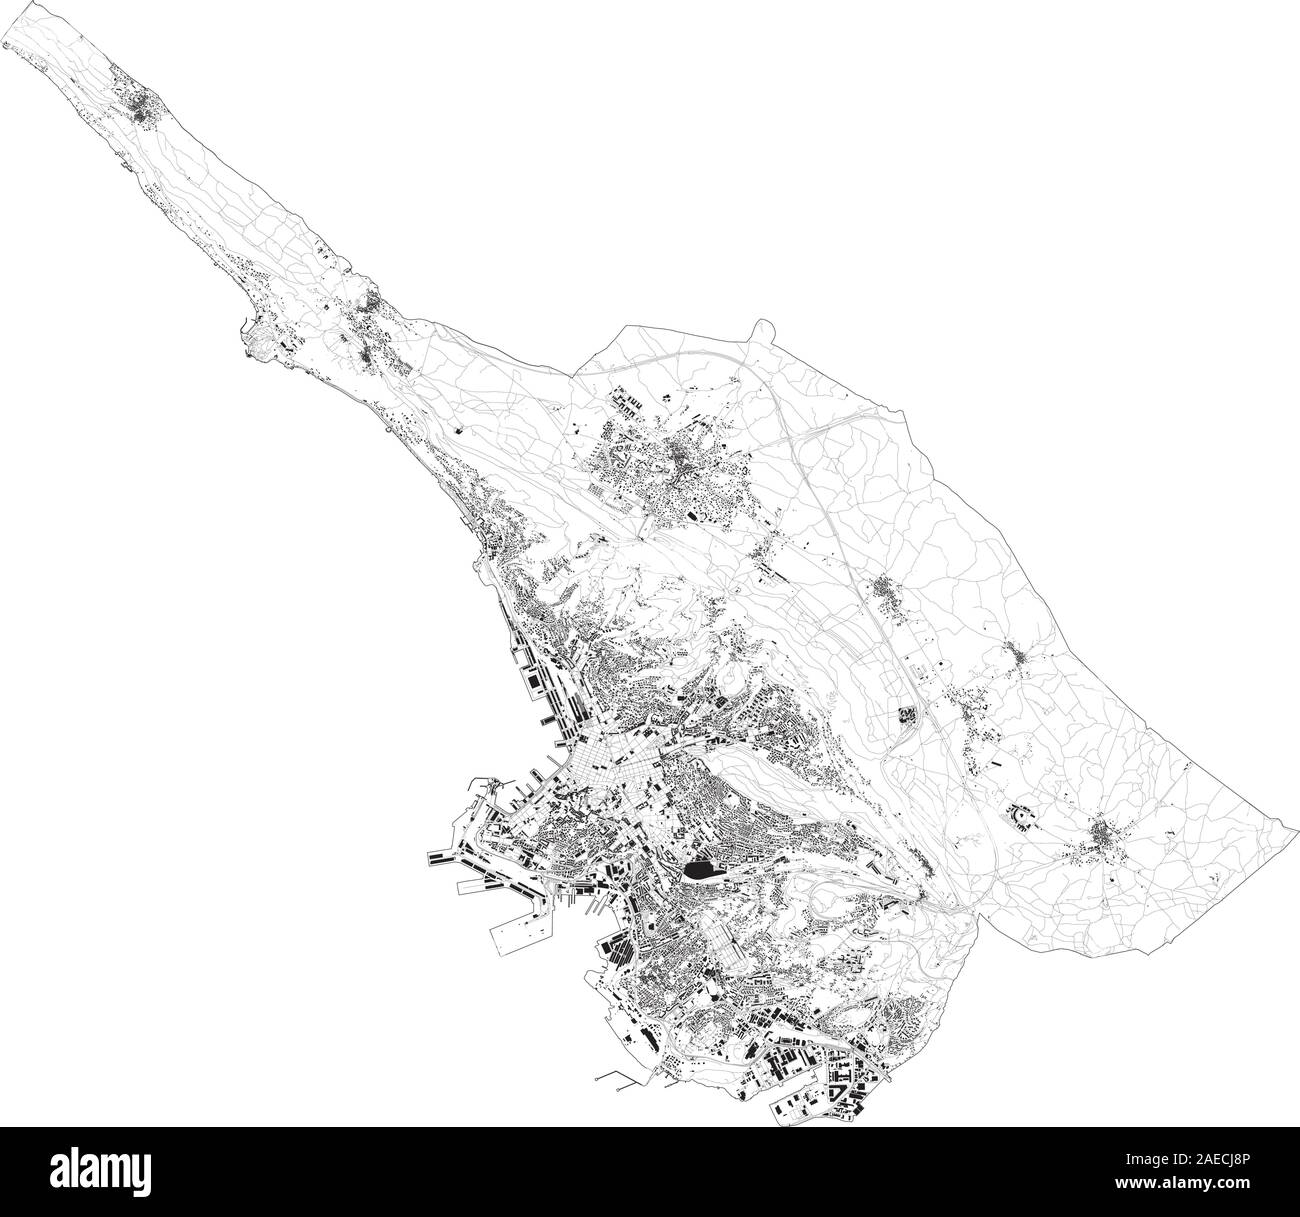 Sat-Karte Triest, Städte und Straßen, Gebäude und Straßen der Umgebung. Friaul-julisch Venetien, Italien. Karte Straßen, Ringstraßen Stock Vektor